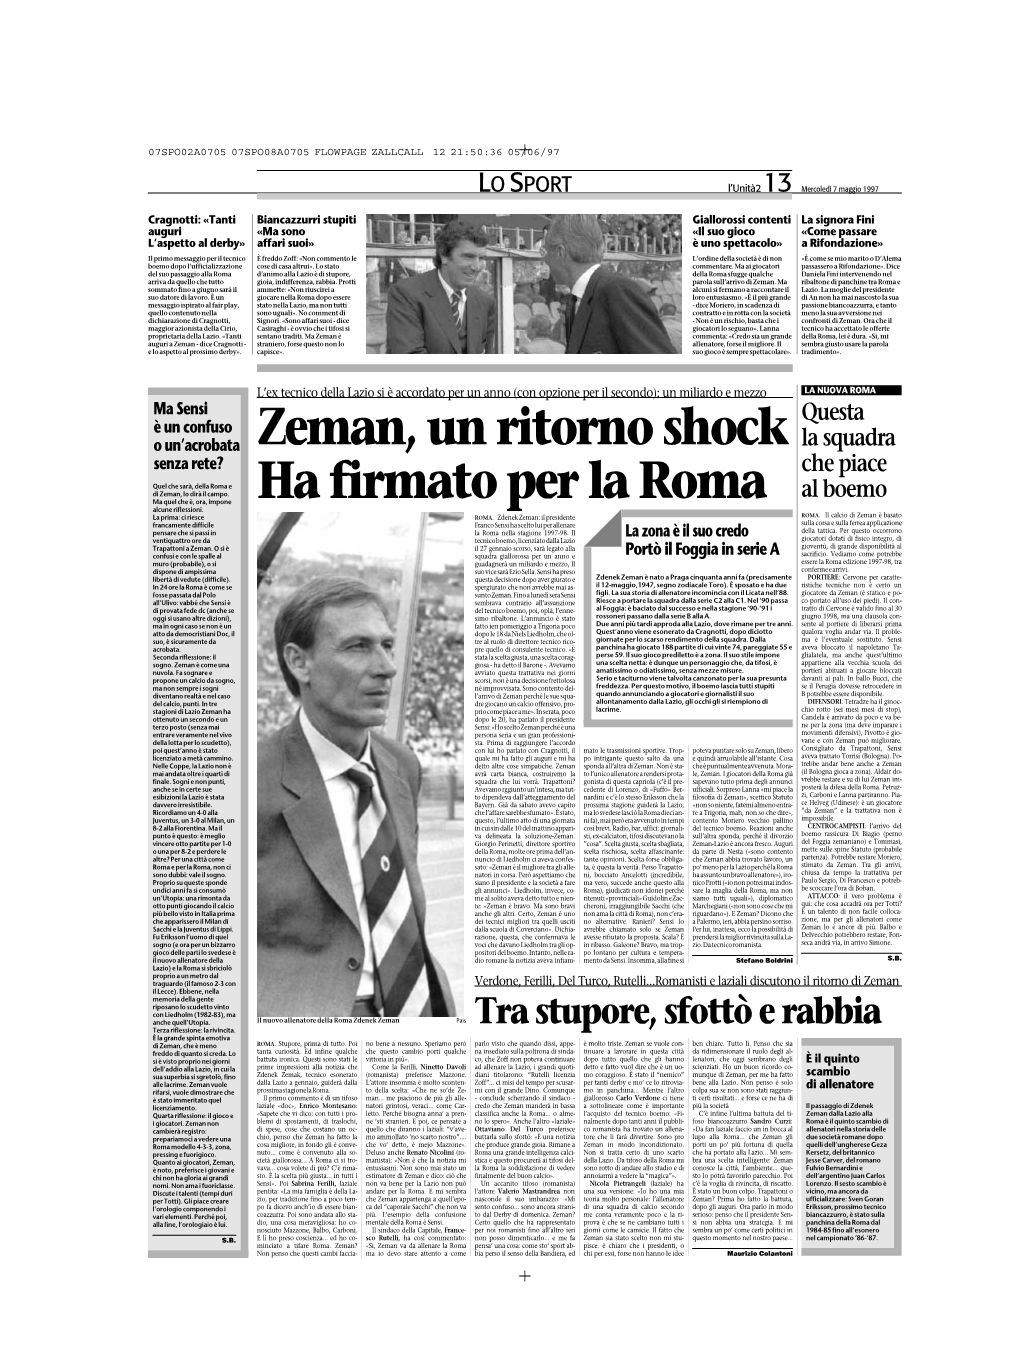 Zeman, Un Ritorno Shock Ha Firmato Per La Roma